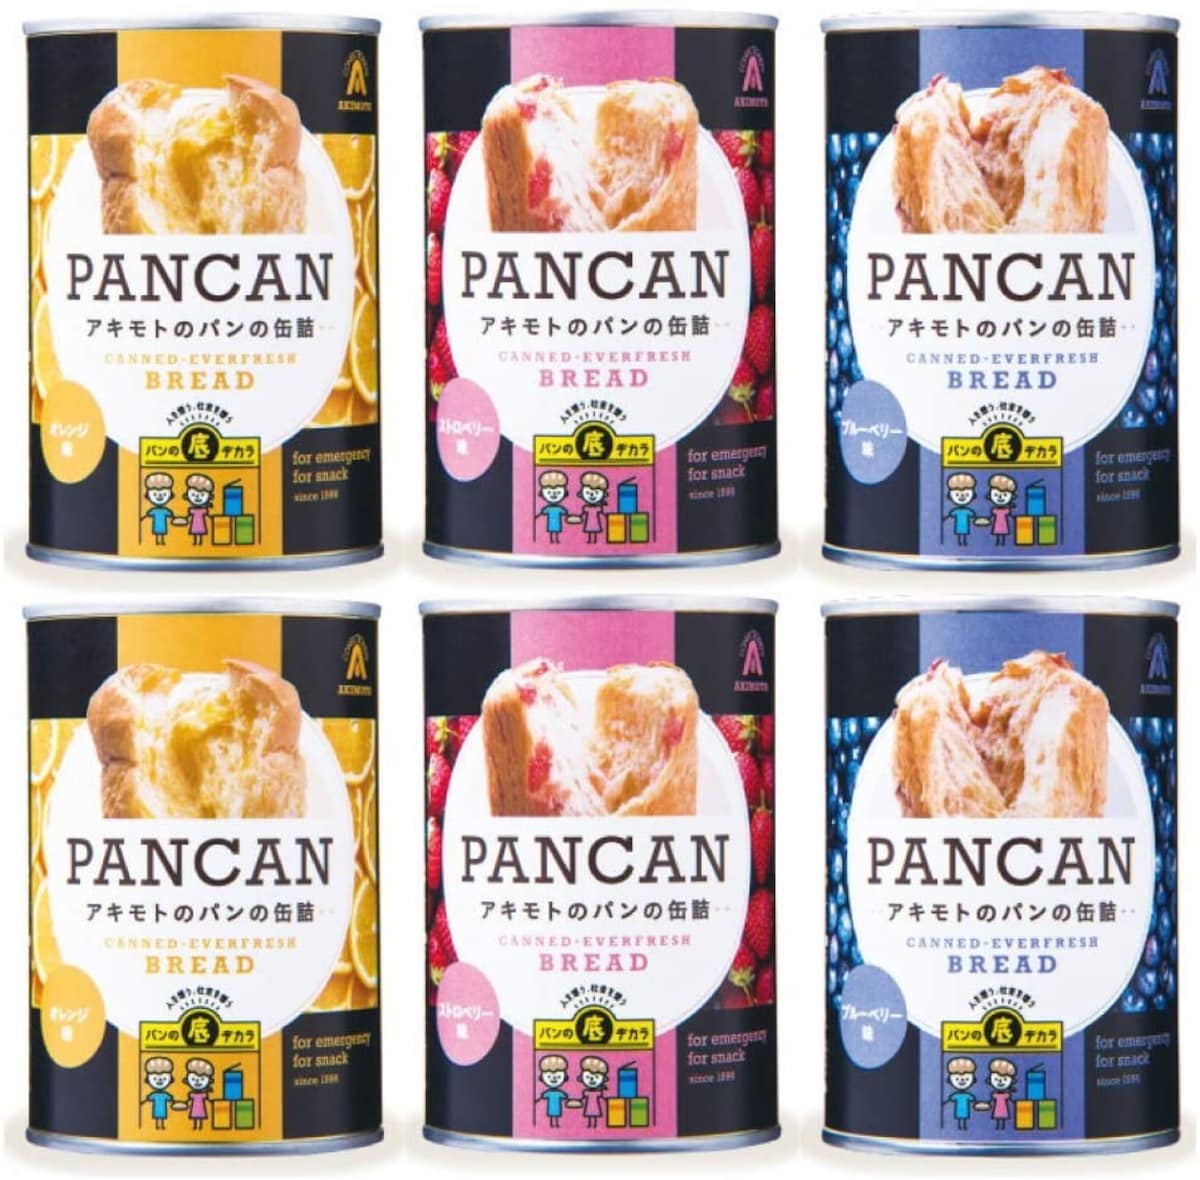 PANCAN パンの缶詰め 6缶セット(ブルーベリー・オレンジ・ストロベリー×各2缶)